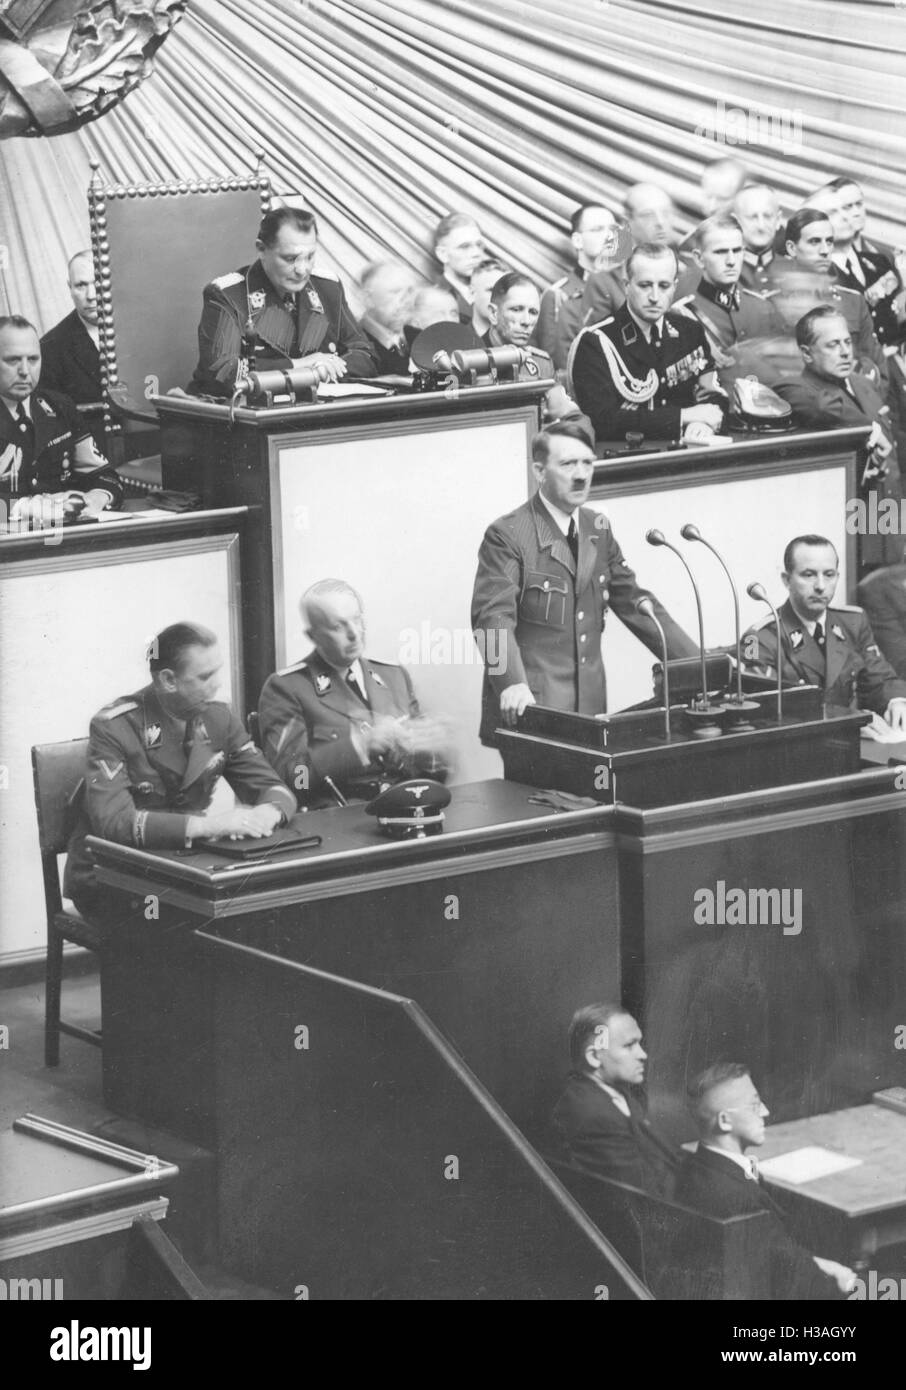 Discours de Hitler devant le Reichstag sur la déclaration de guerre contre la Pologne dans le Berlin de l'Opéra Kroll, 1939 Banque D'Images